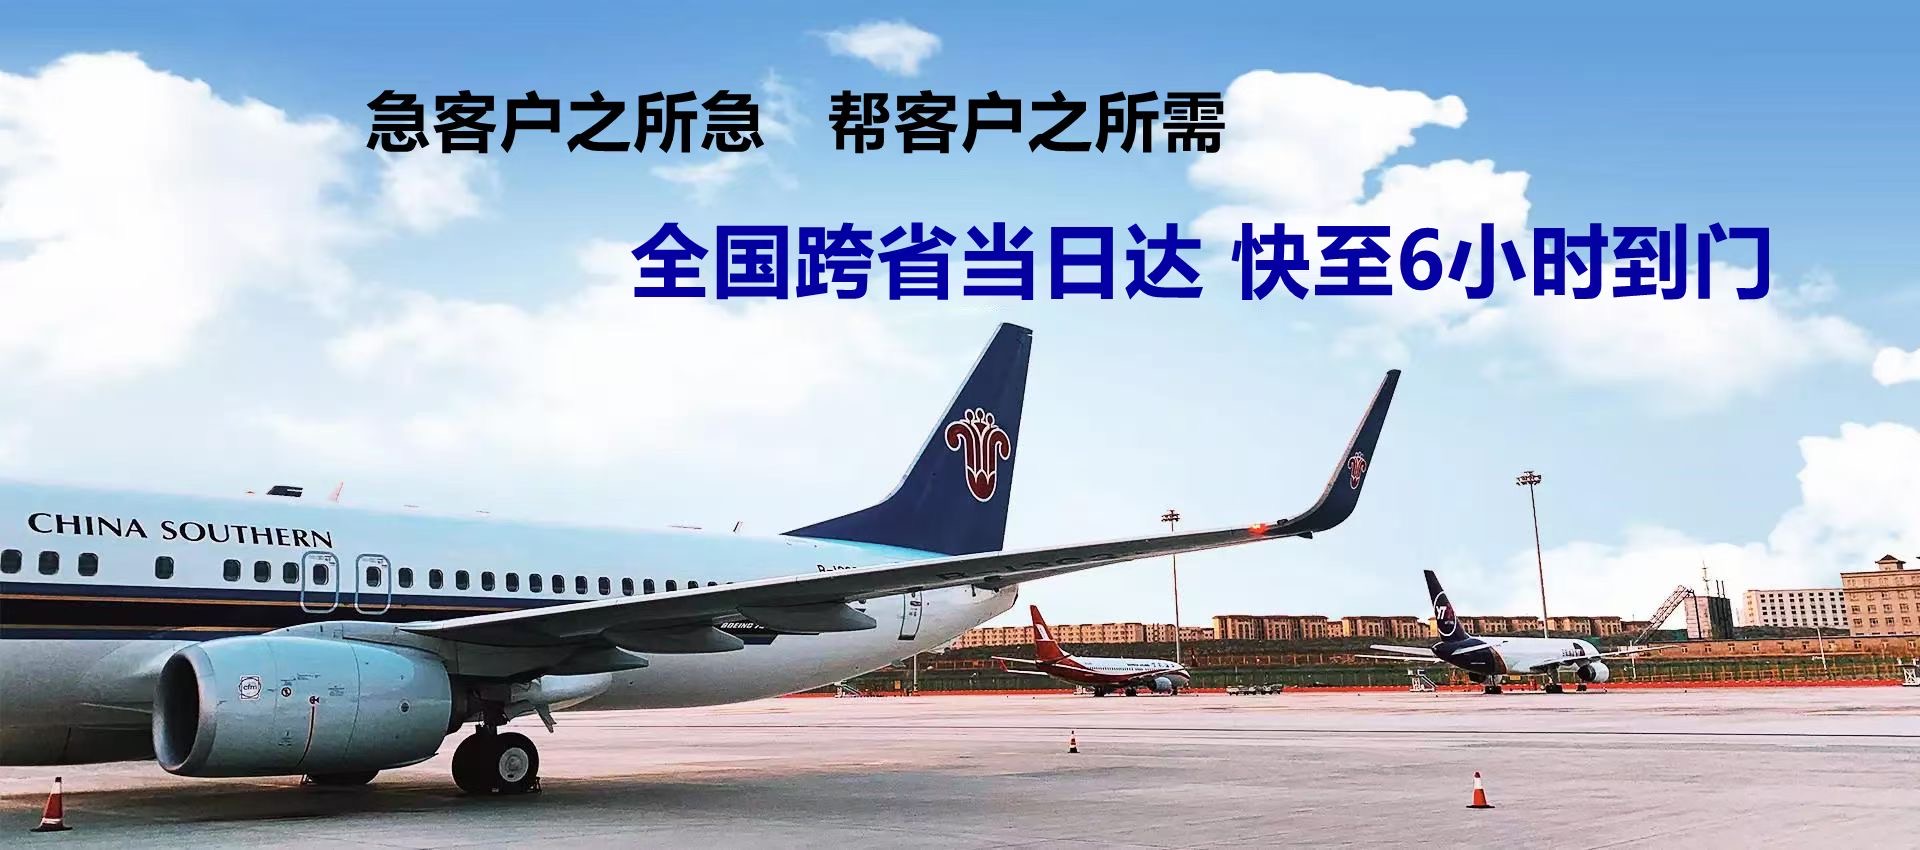 邯郸市-广州机场航空货运-限时达空运物流公司